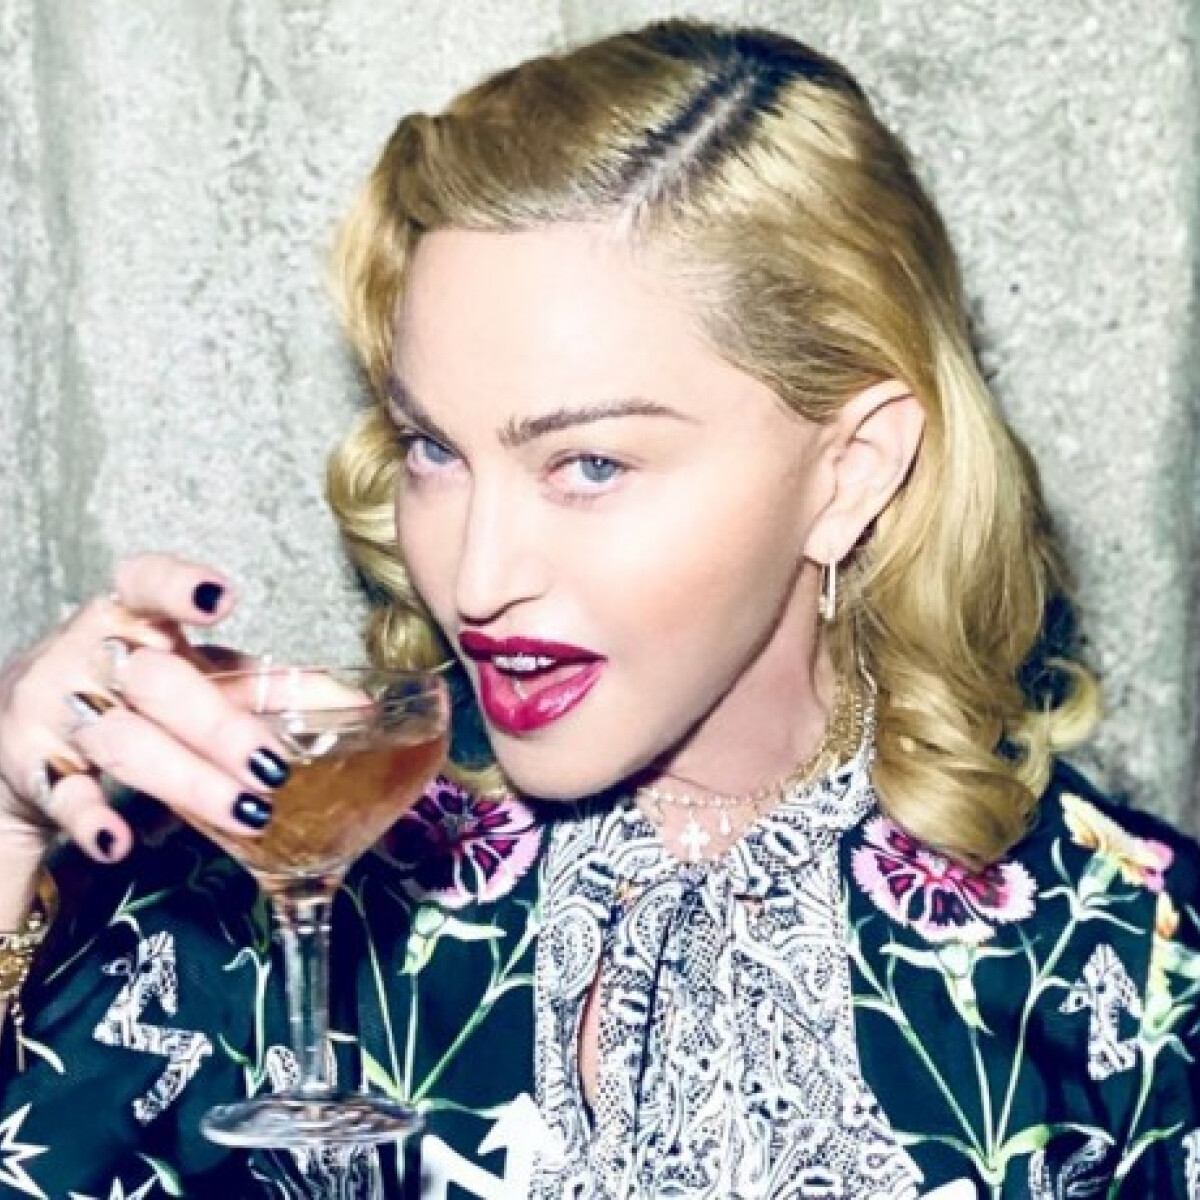 Így tartja magát fitten és fiatalon Madonna